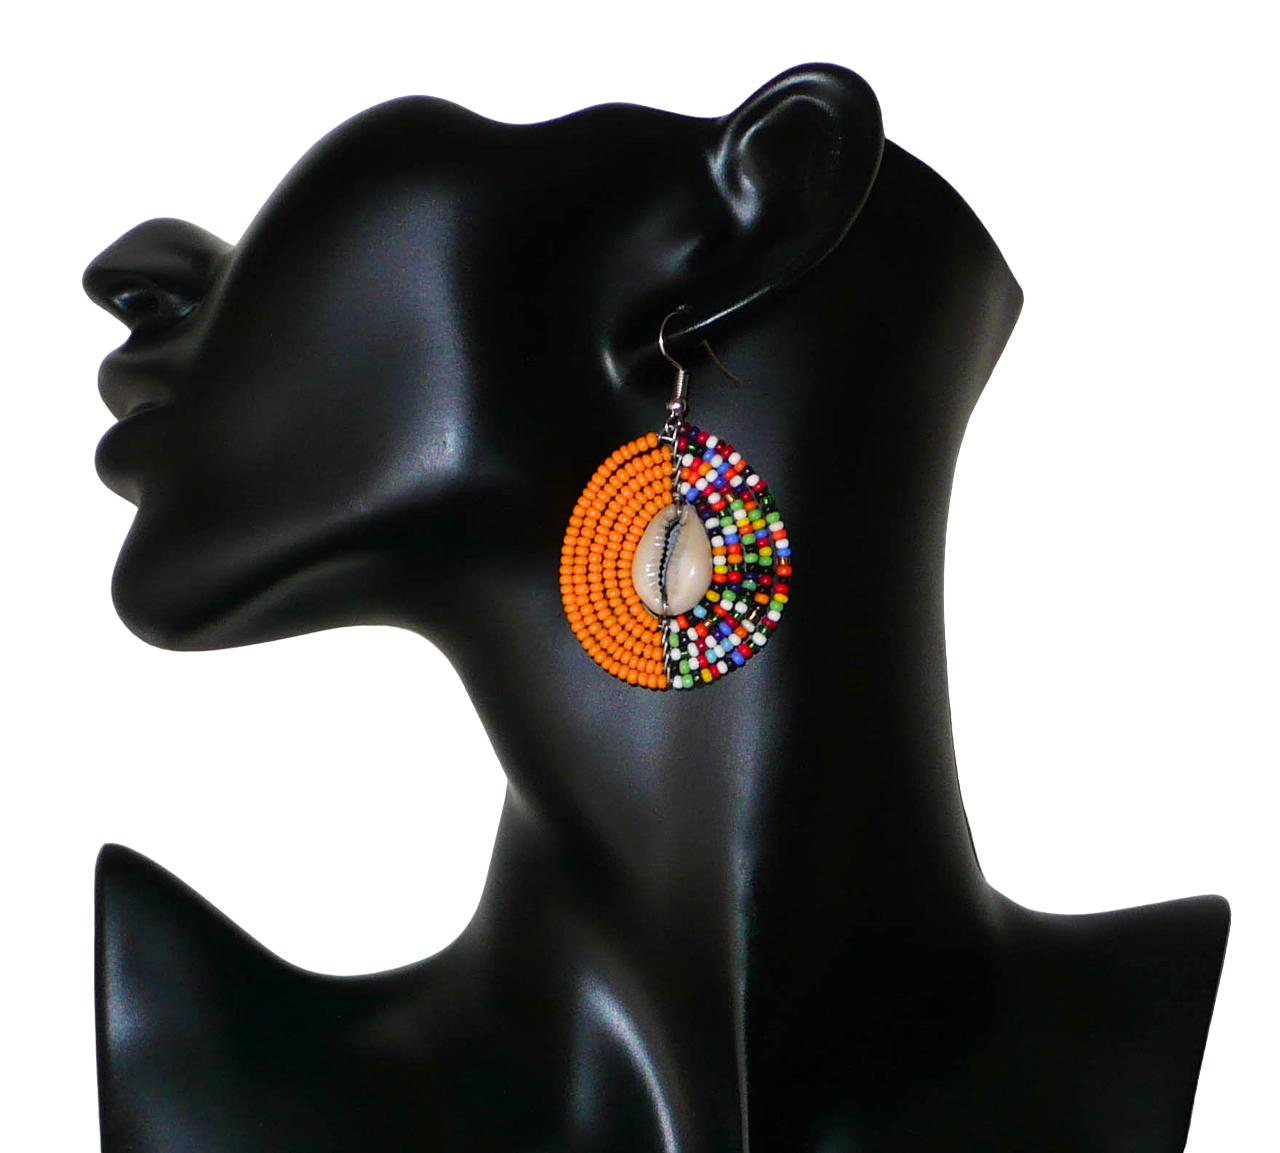 Boucles d'oreilles ethniques composées de perles de rocaille orange et d'un mélange de perles multicolores ; elles sont incrustées en leur centre de coquillages cauris. De taille moyenne, ces boucles d'oreilles mesurent 6 cm de long et 3,5 cm de large ; elles se portent sur des oreilles percées.